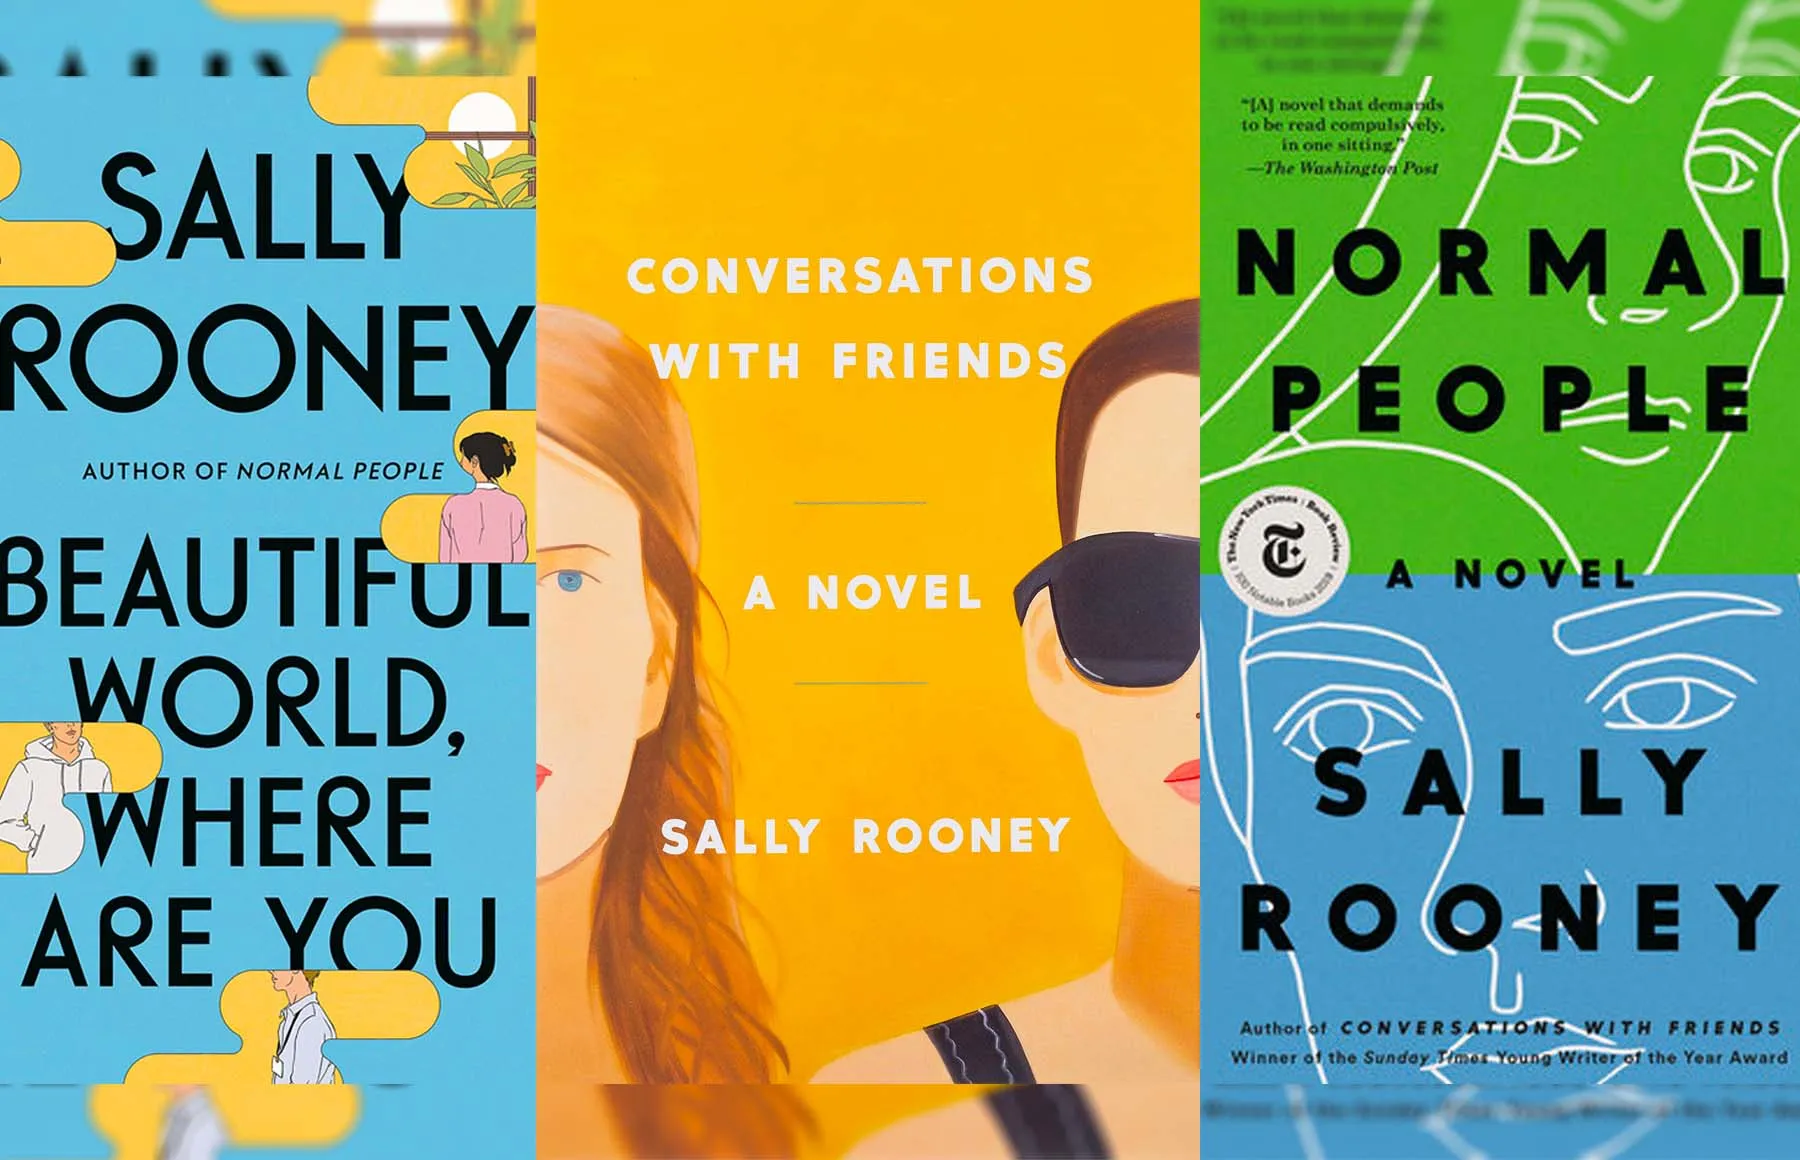 Trò chuyện với bạn bè: Sê-ri Hulu dựa trên cuốn sách của Sally Rooney